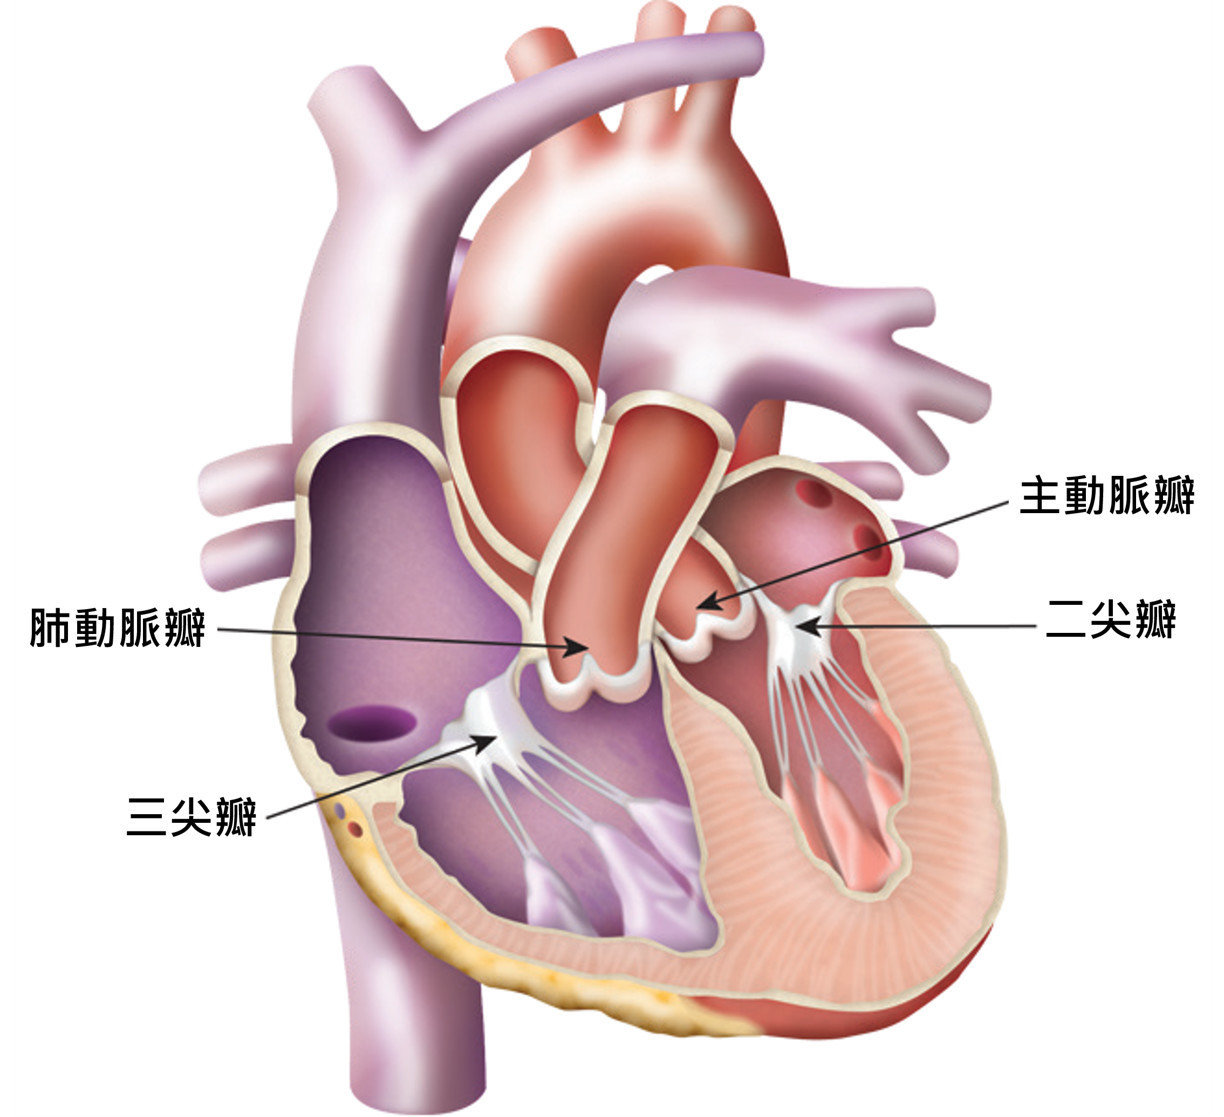 心臟瓣膜位於心臟的腔室及主要血管之間，負責把關血液流向。